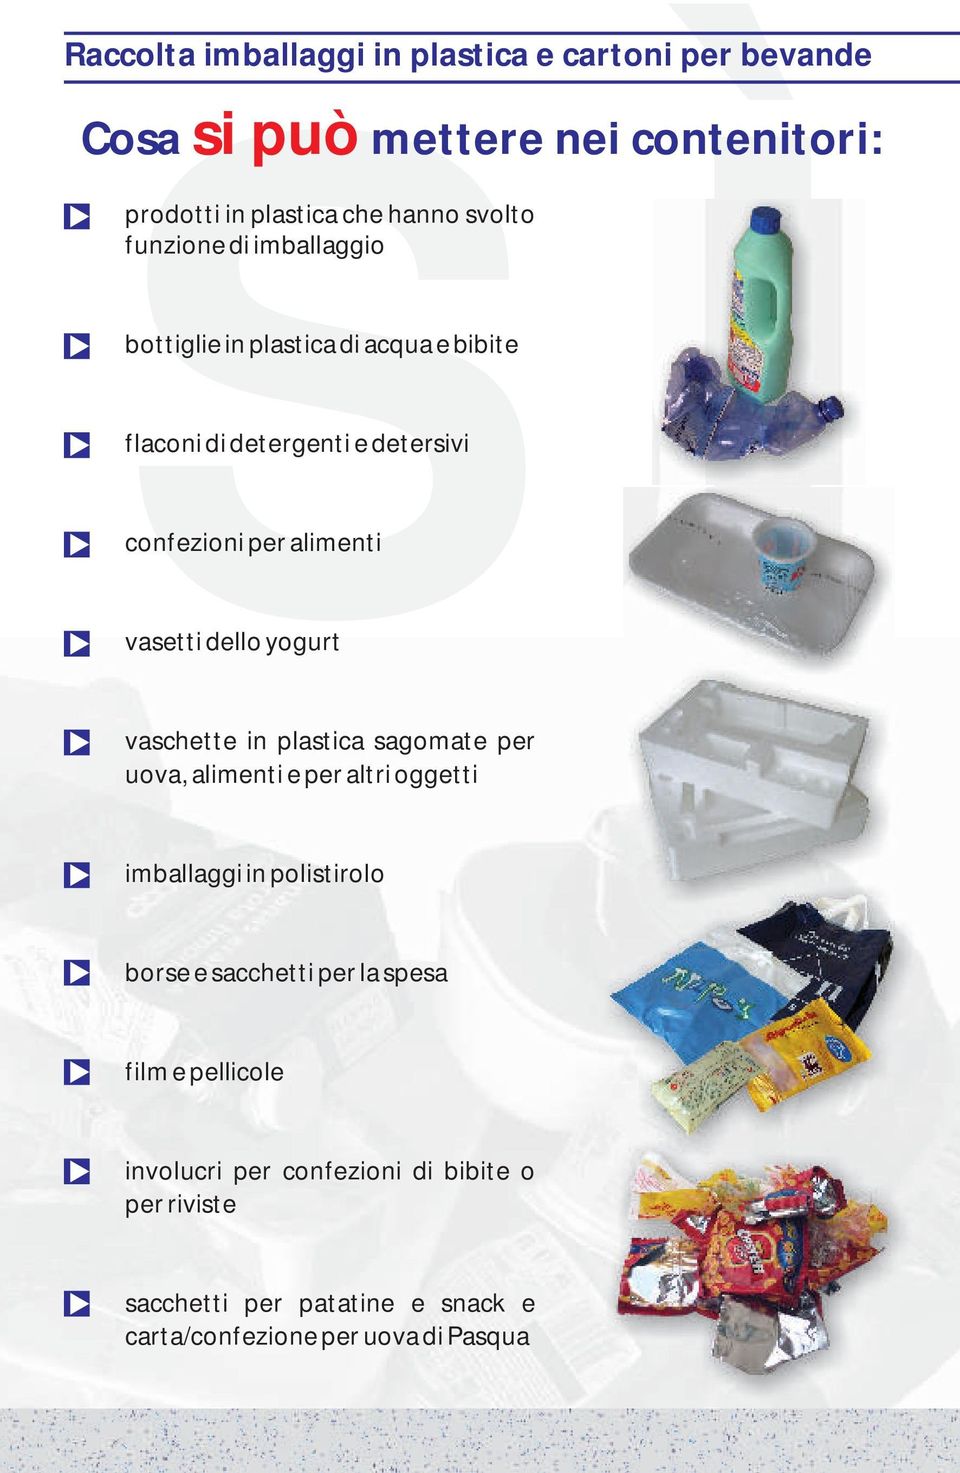 contenitori: vaschette in plastica sagomate per uova, alimenti e per altri oggetti imballaggi in polistirolo borse e sacchetti per la